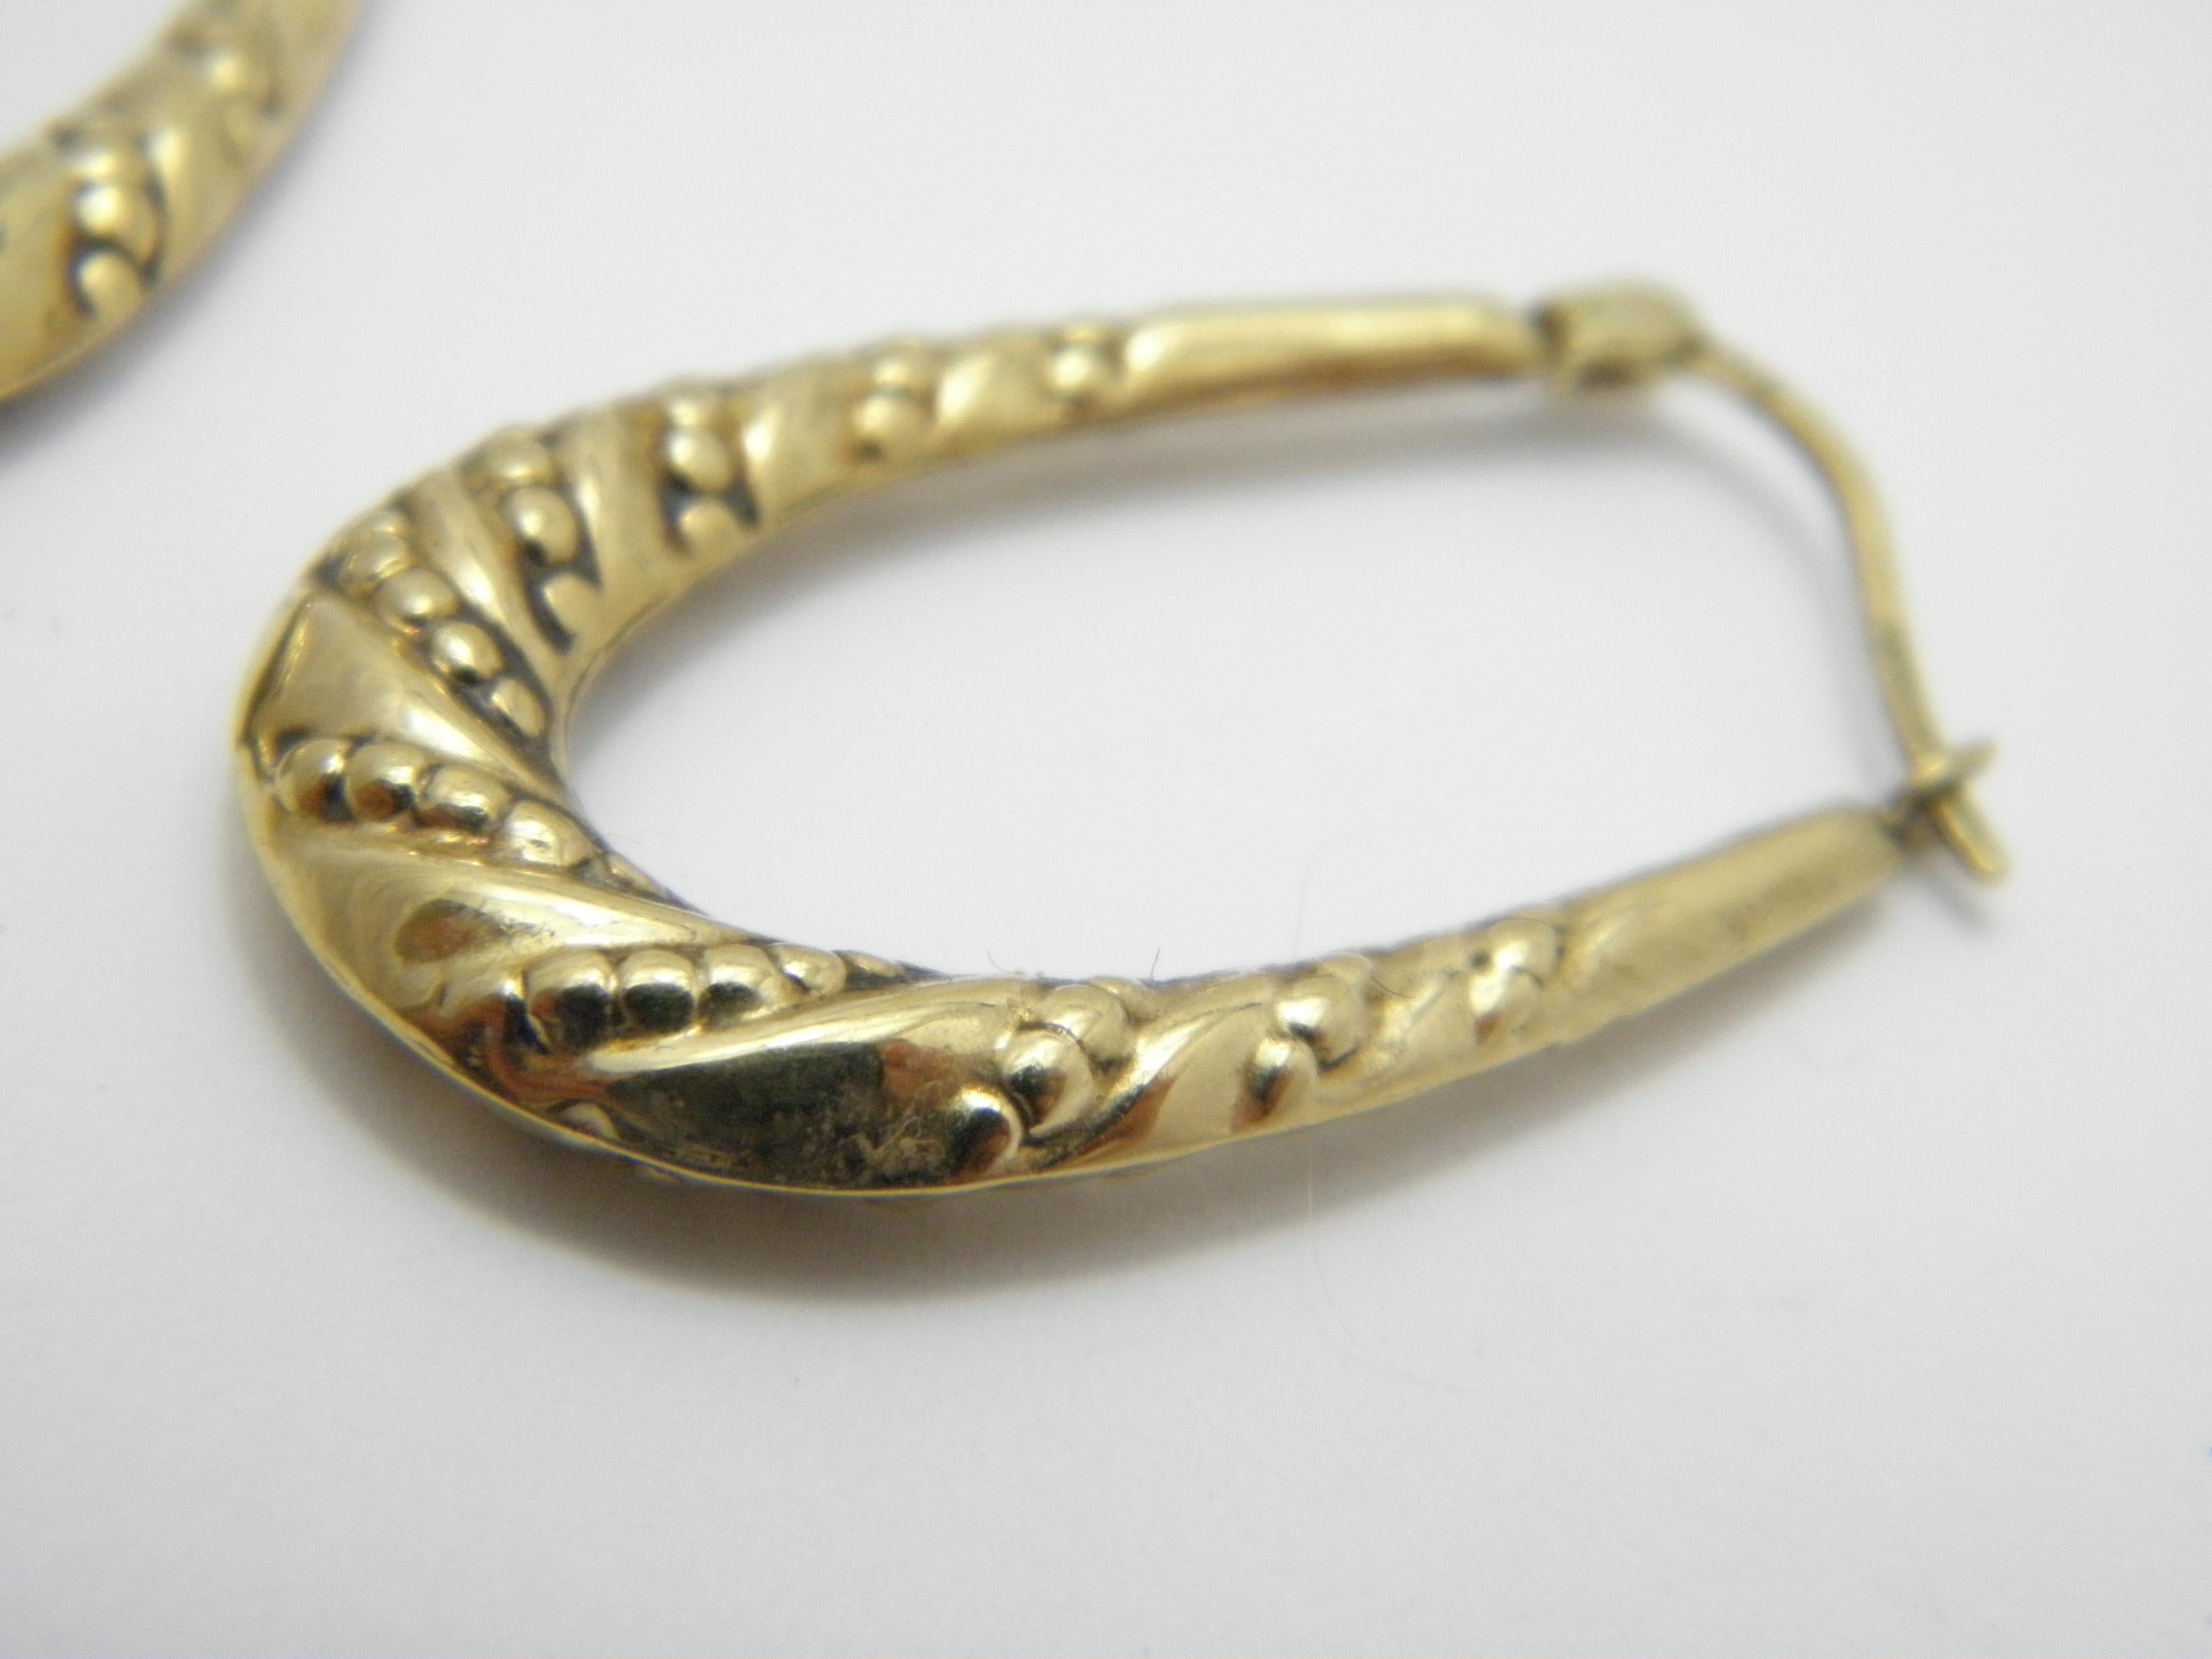 9ct gold earrings hoops